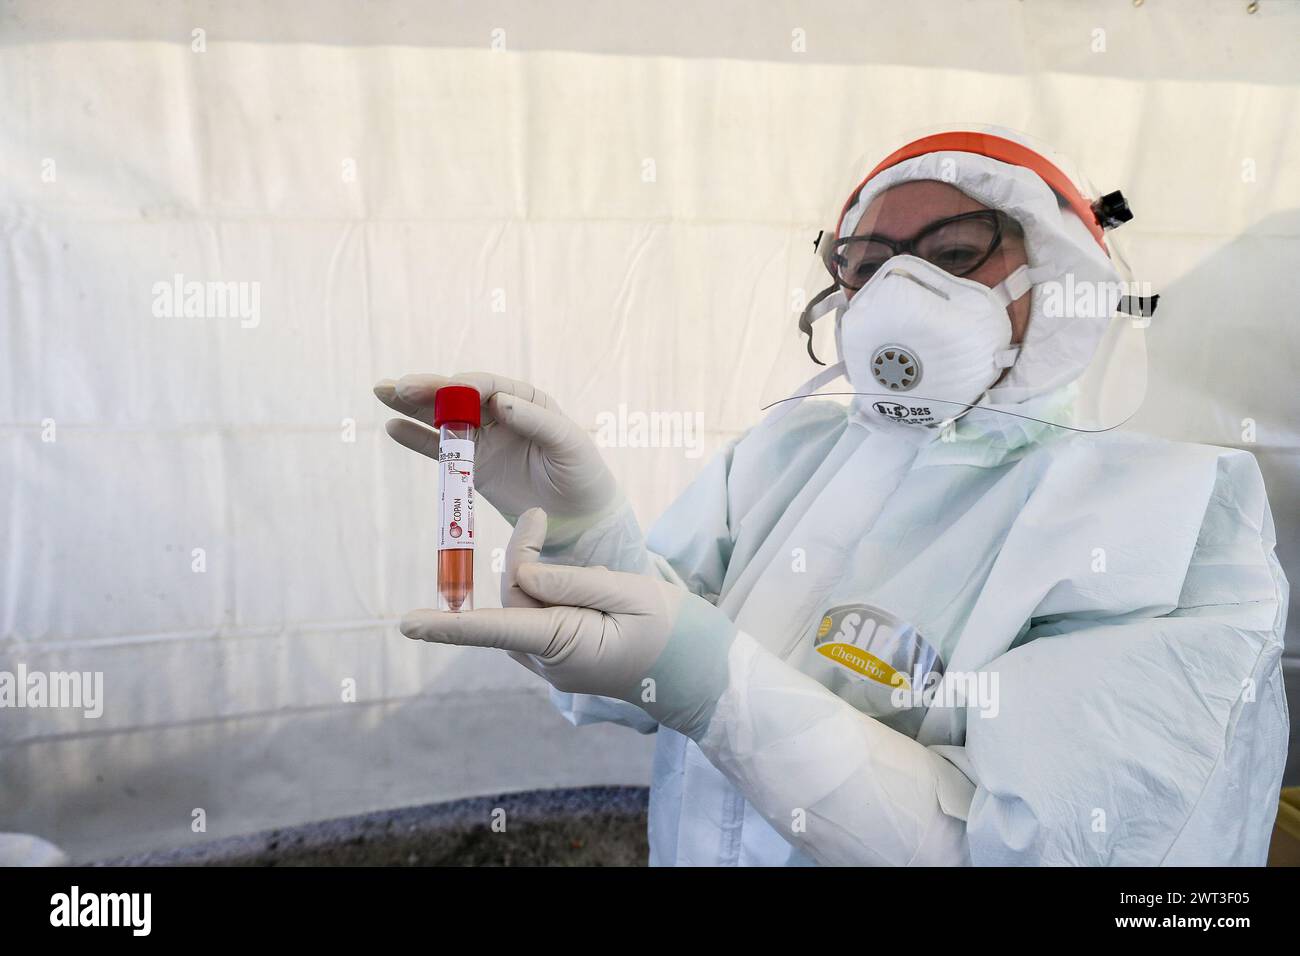 Ein Arzt, der sich in Overall und Masken zum Selbstschutz kleidet, zeigt das Reagenzglas für Personen, die den Test auf das Coronavirus COVID-19 durchführen müssen; Stockfoto